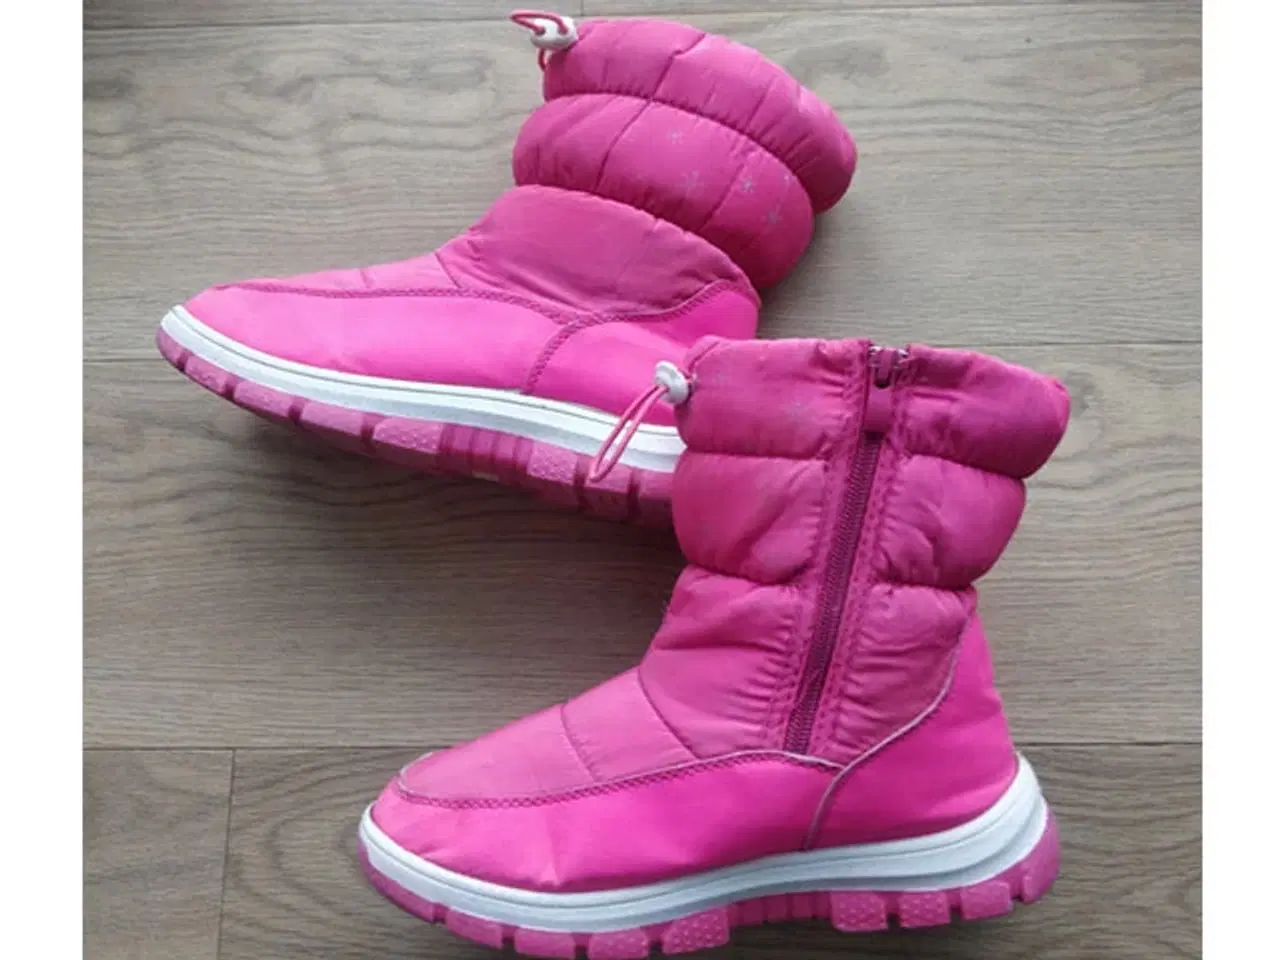 Billede 1 - lyserøde vinterstøvler med smukke sølvsnefnug